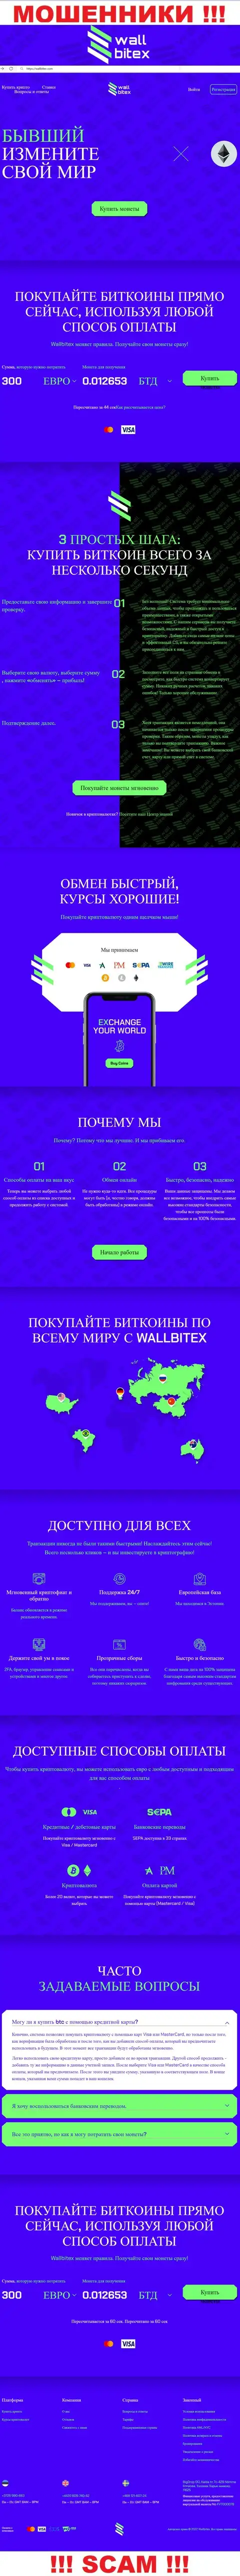 ВаллБитекс Ком - официальный веб-сайт мошеннической компании WallBitex